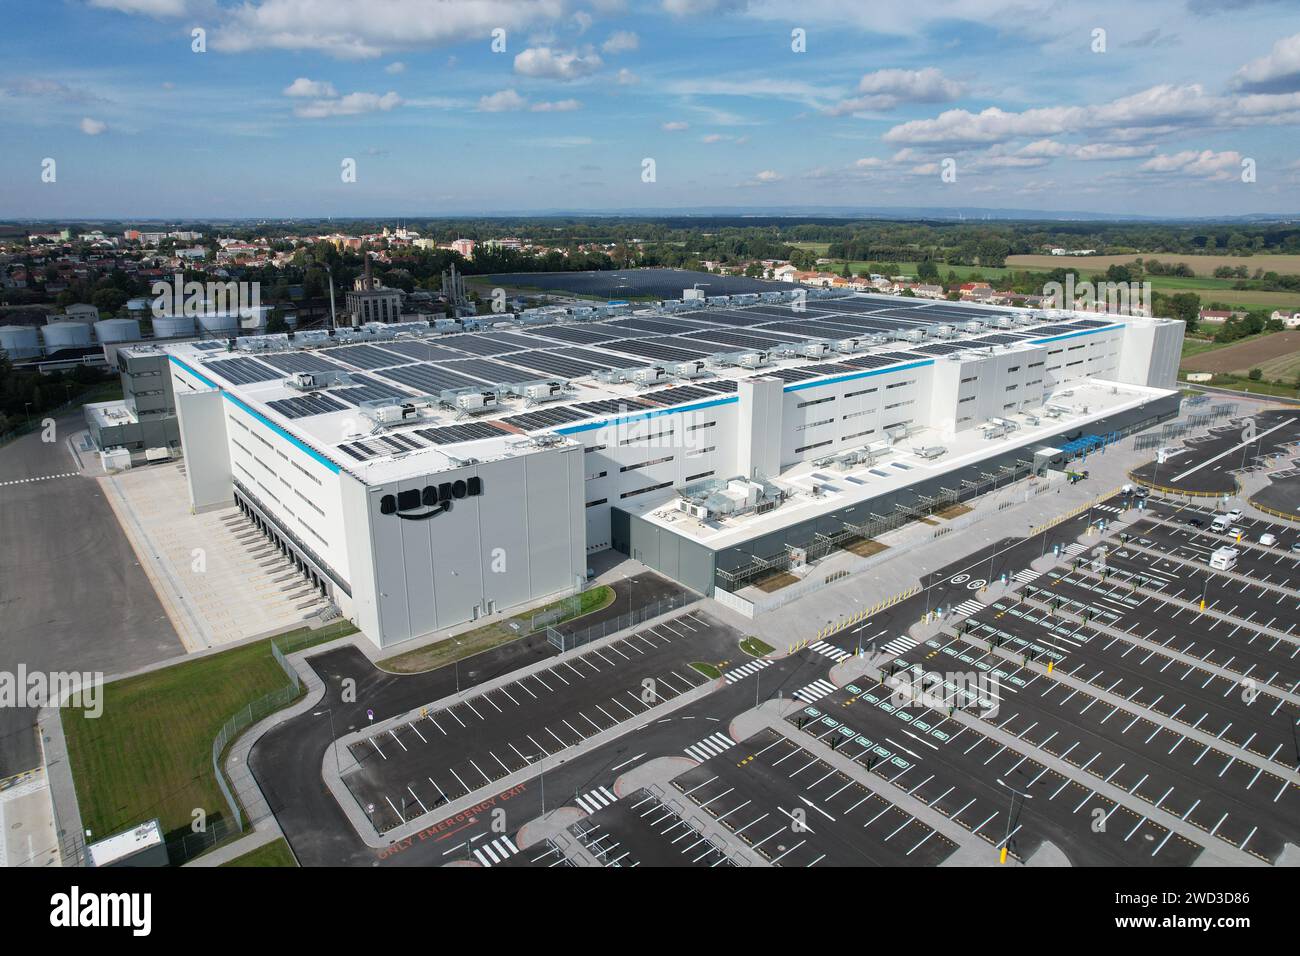 Luftaufnahme des Vertriebszentrums, Drohnenfoto der industriellen Logistikzone, neues, supermodernes Logistikzentrum voller moderner Technologie und Robotik Stockfoto